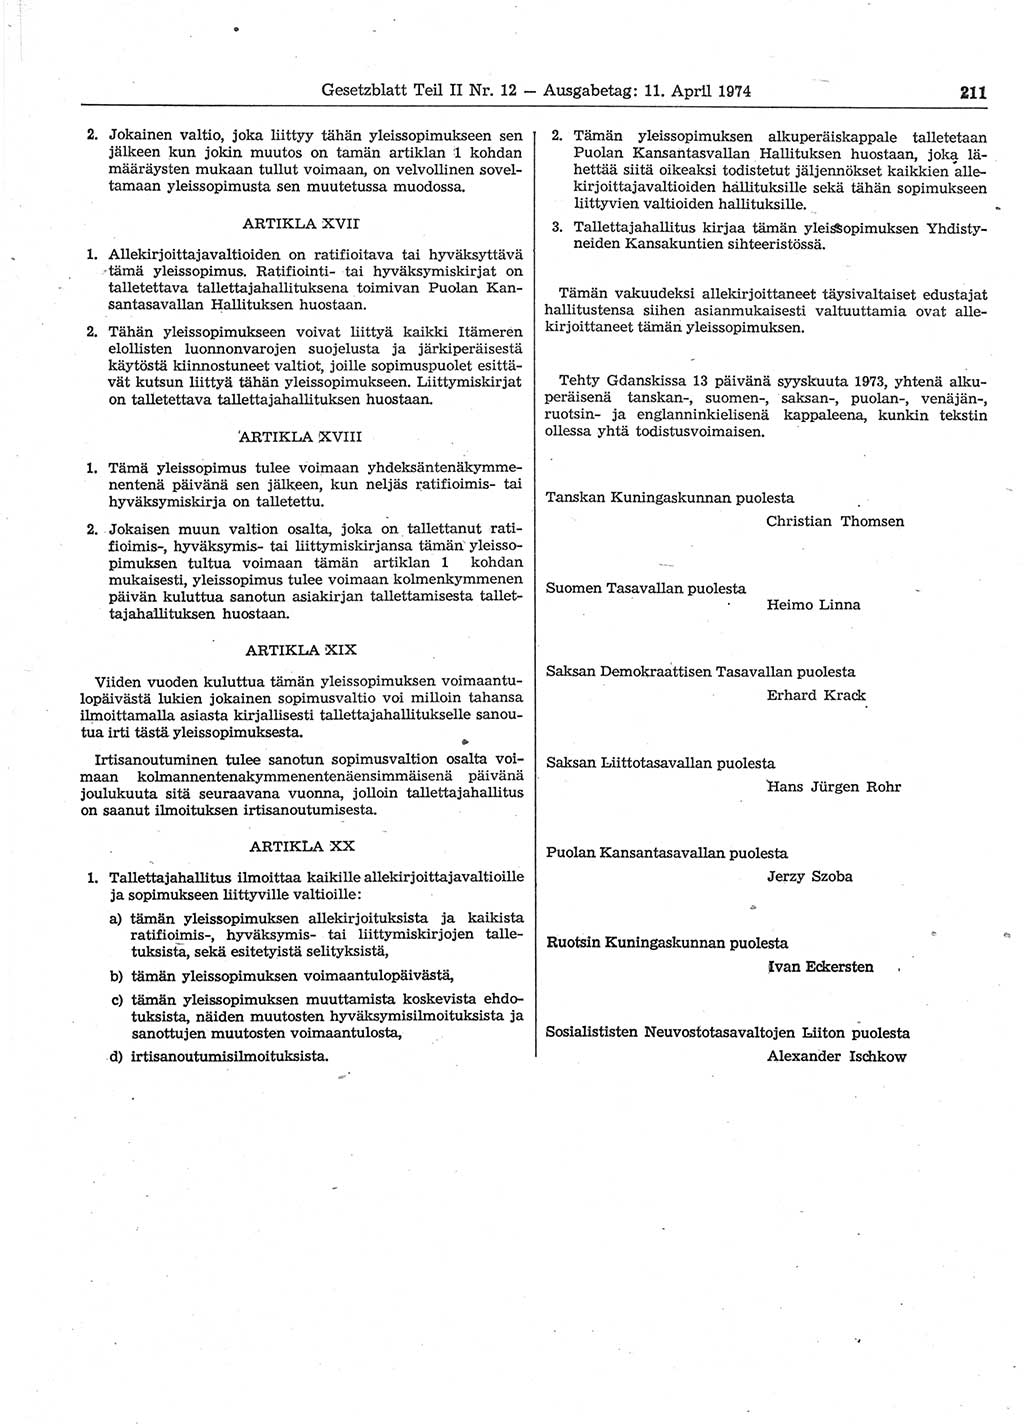 Gesetzblatt (GBl.) der Deutschen Demokratischen Republik (DDR) Teil ⅠⅠ 1974, Seite 211 (GBl. DDR ⅠⅠ 1974, S. 211)